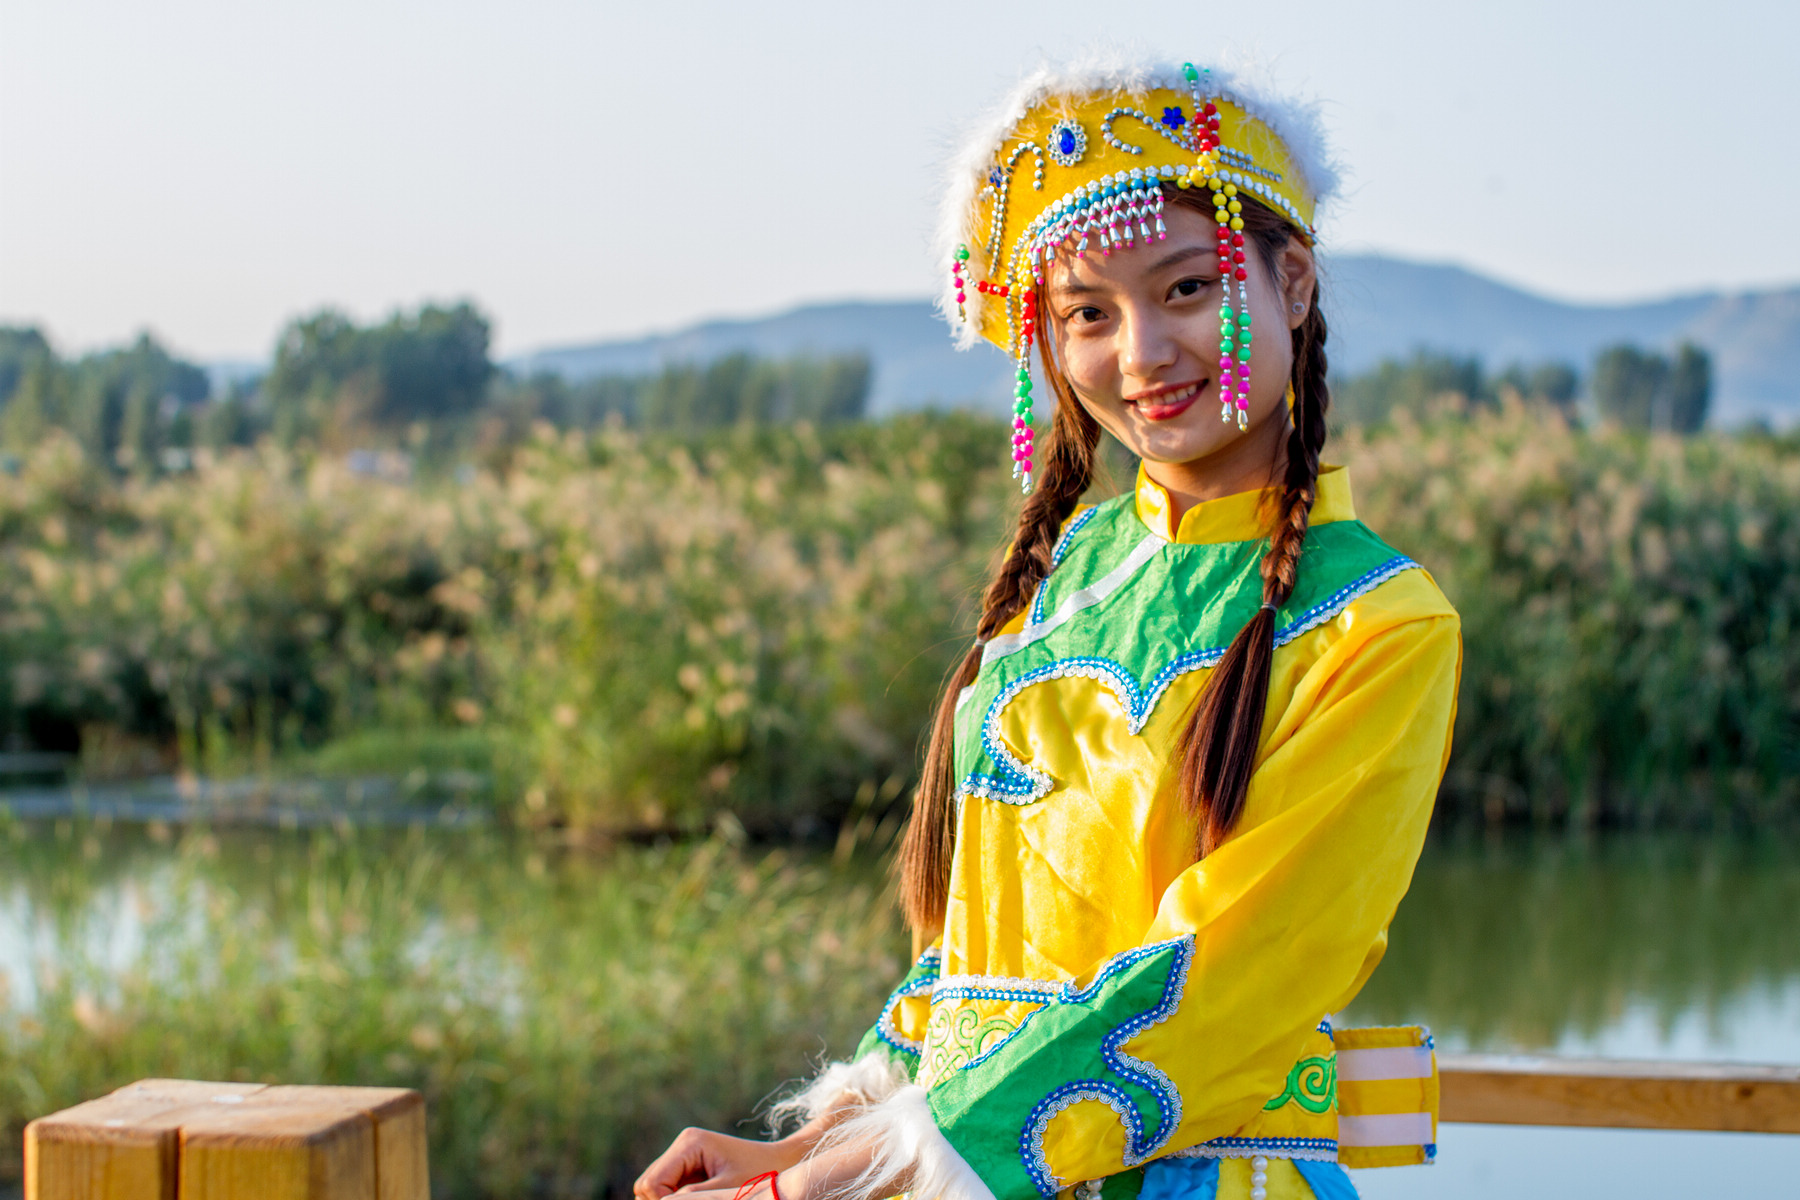 蒙古族服饰正在引领世界时尚新潮流_中国网